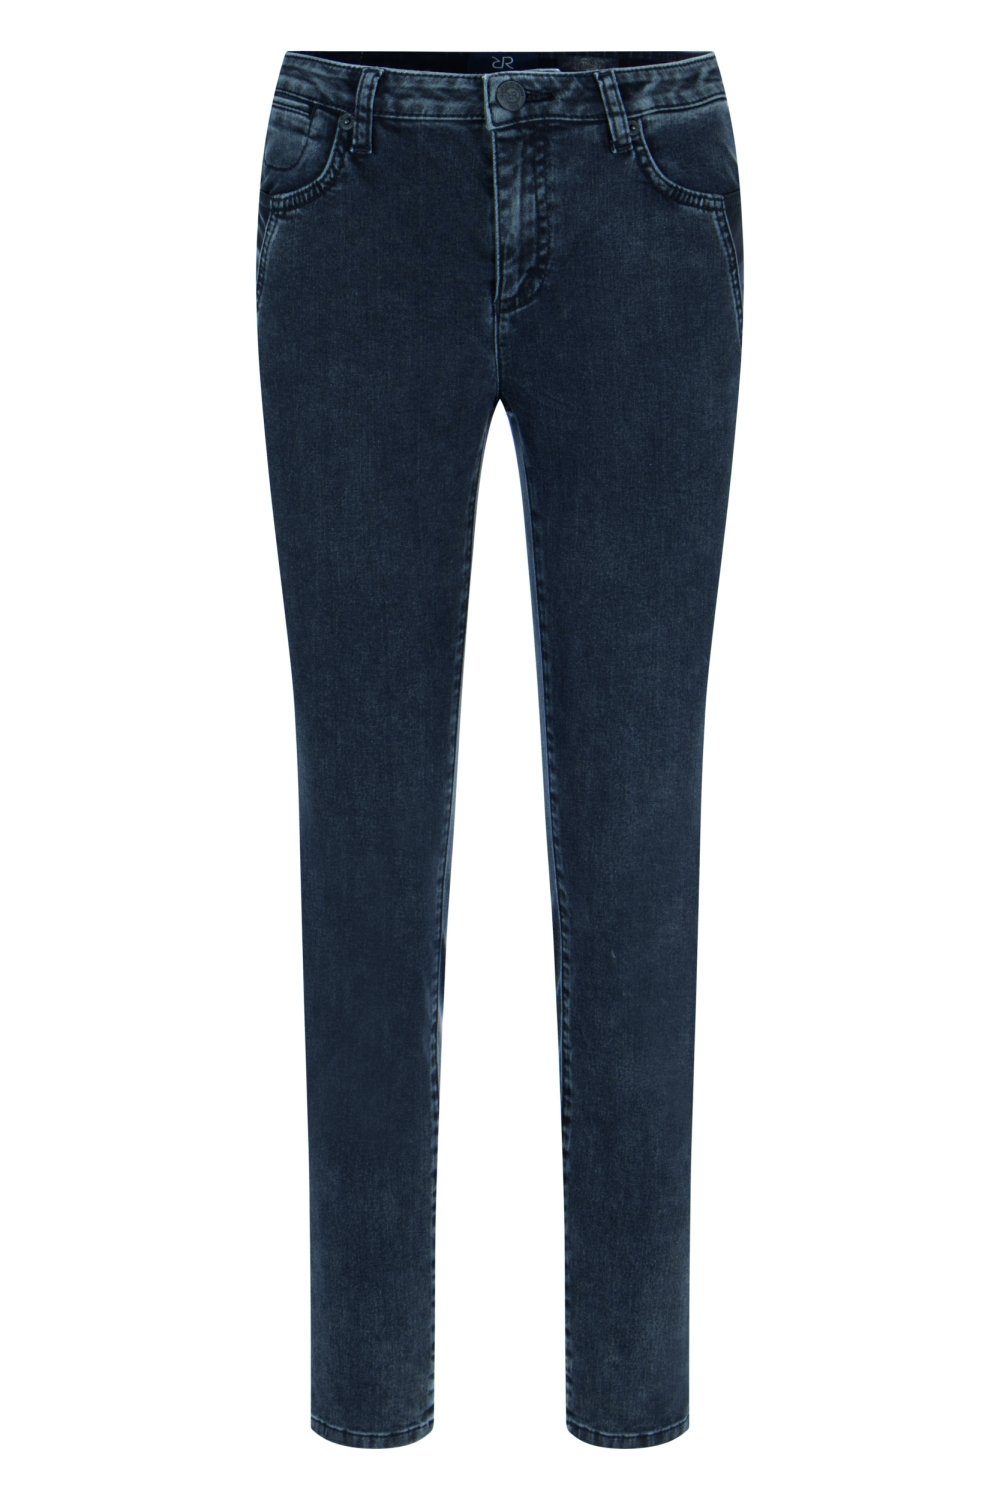 Damen Jeans Raffaello Rossi 5-Pocket-Jeans Jane Leather